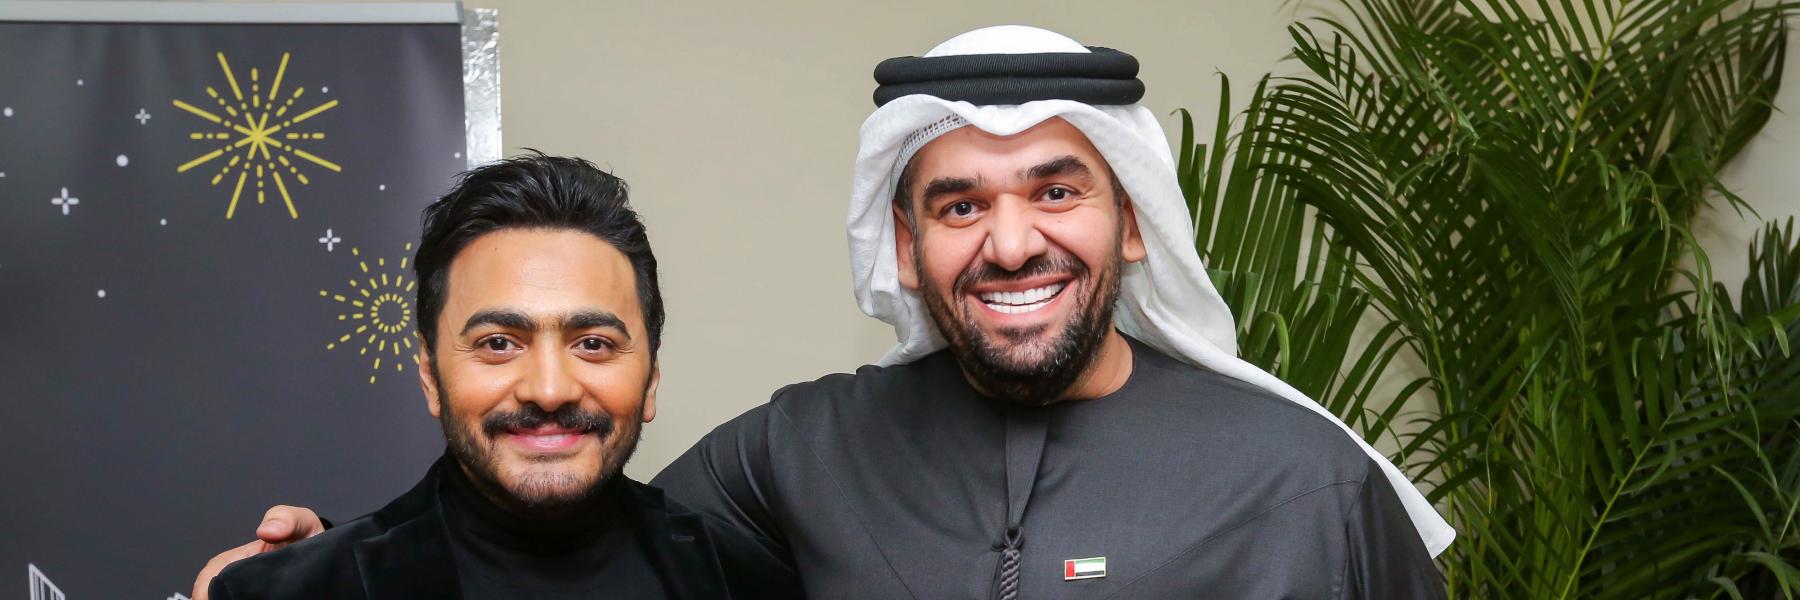 حسين الجسمي وتامر حسني يقدمان حفل جديد في مهرجان دبي للتسوق